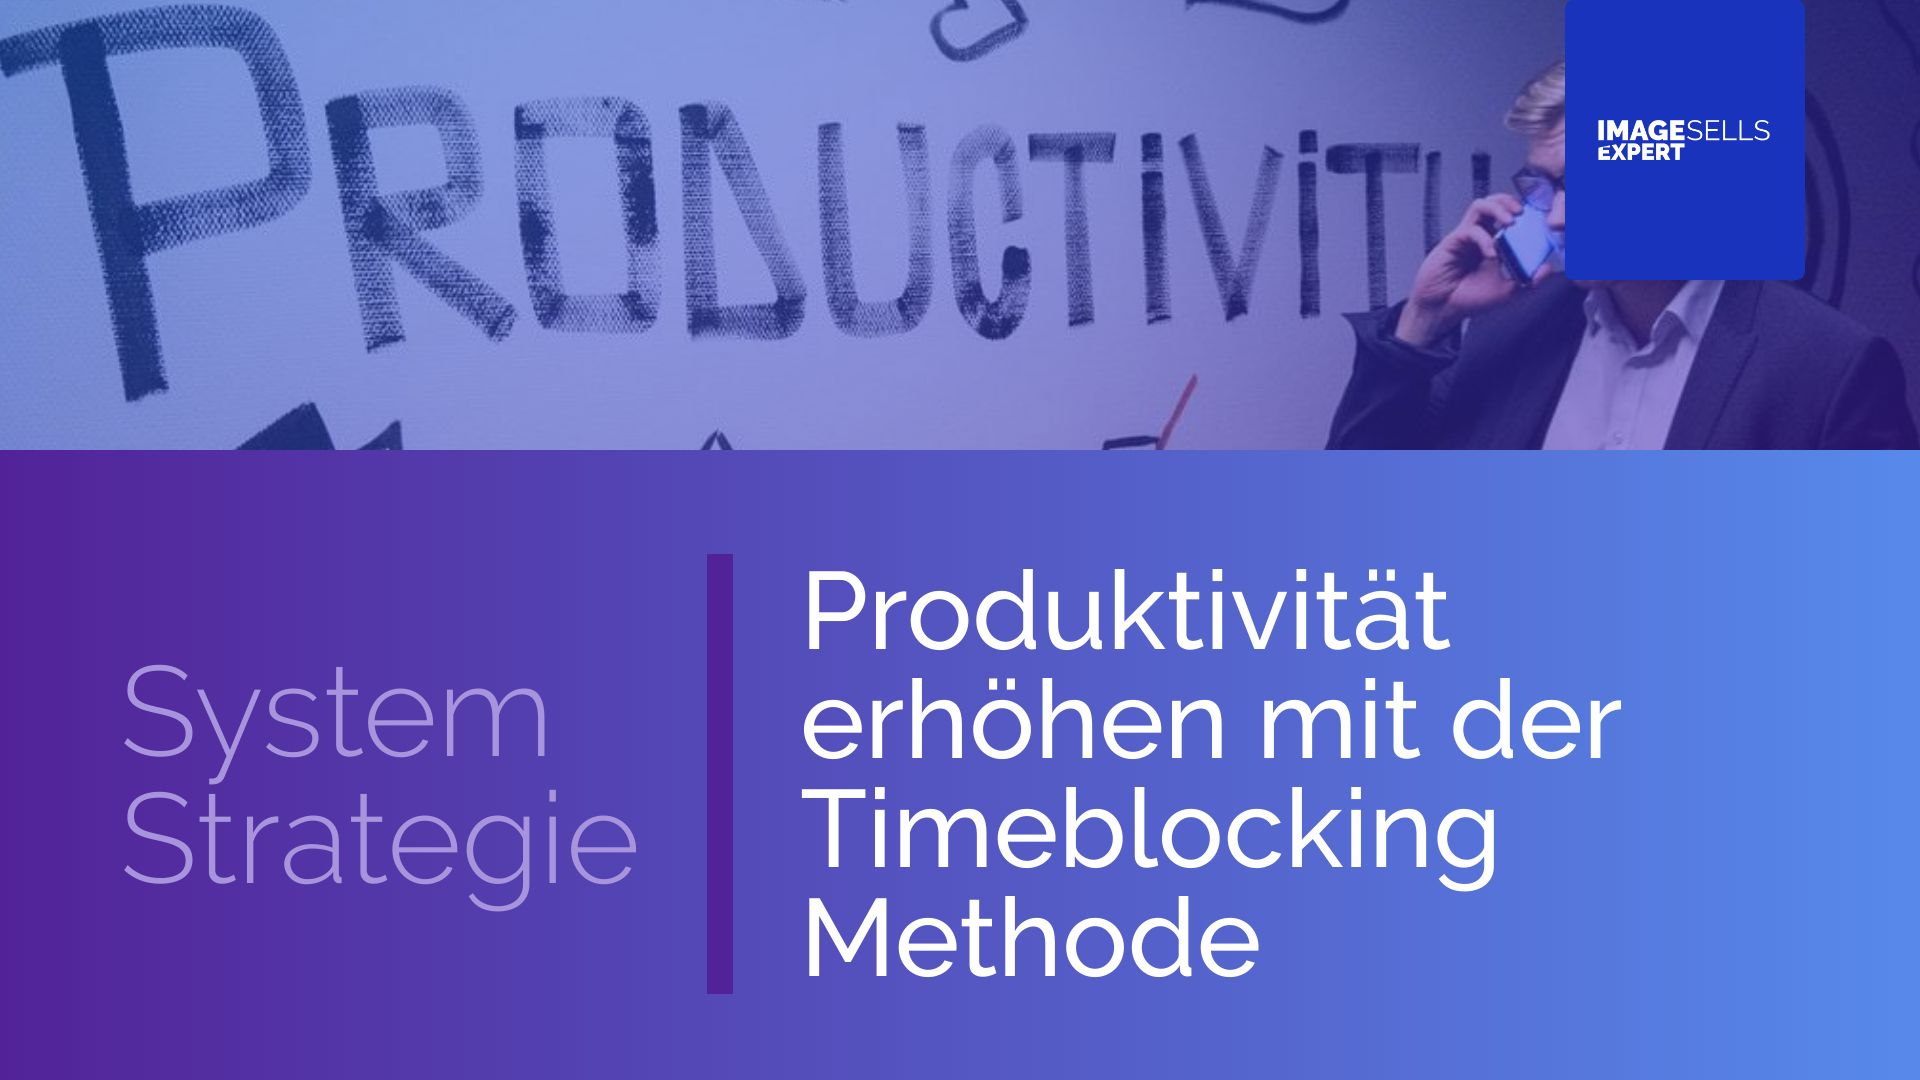 Erhöhe Deine Produktivität mit der Timeblocking Methode